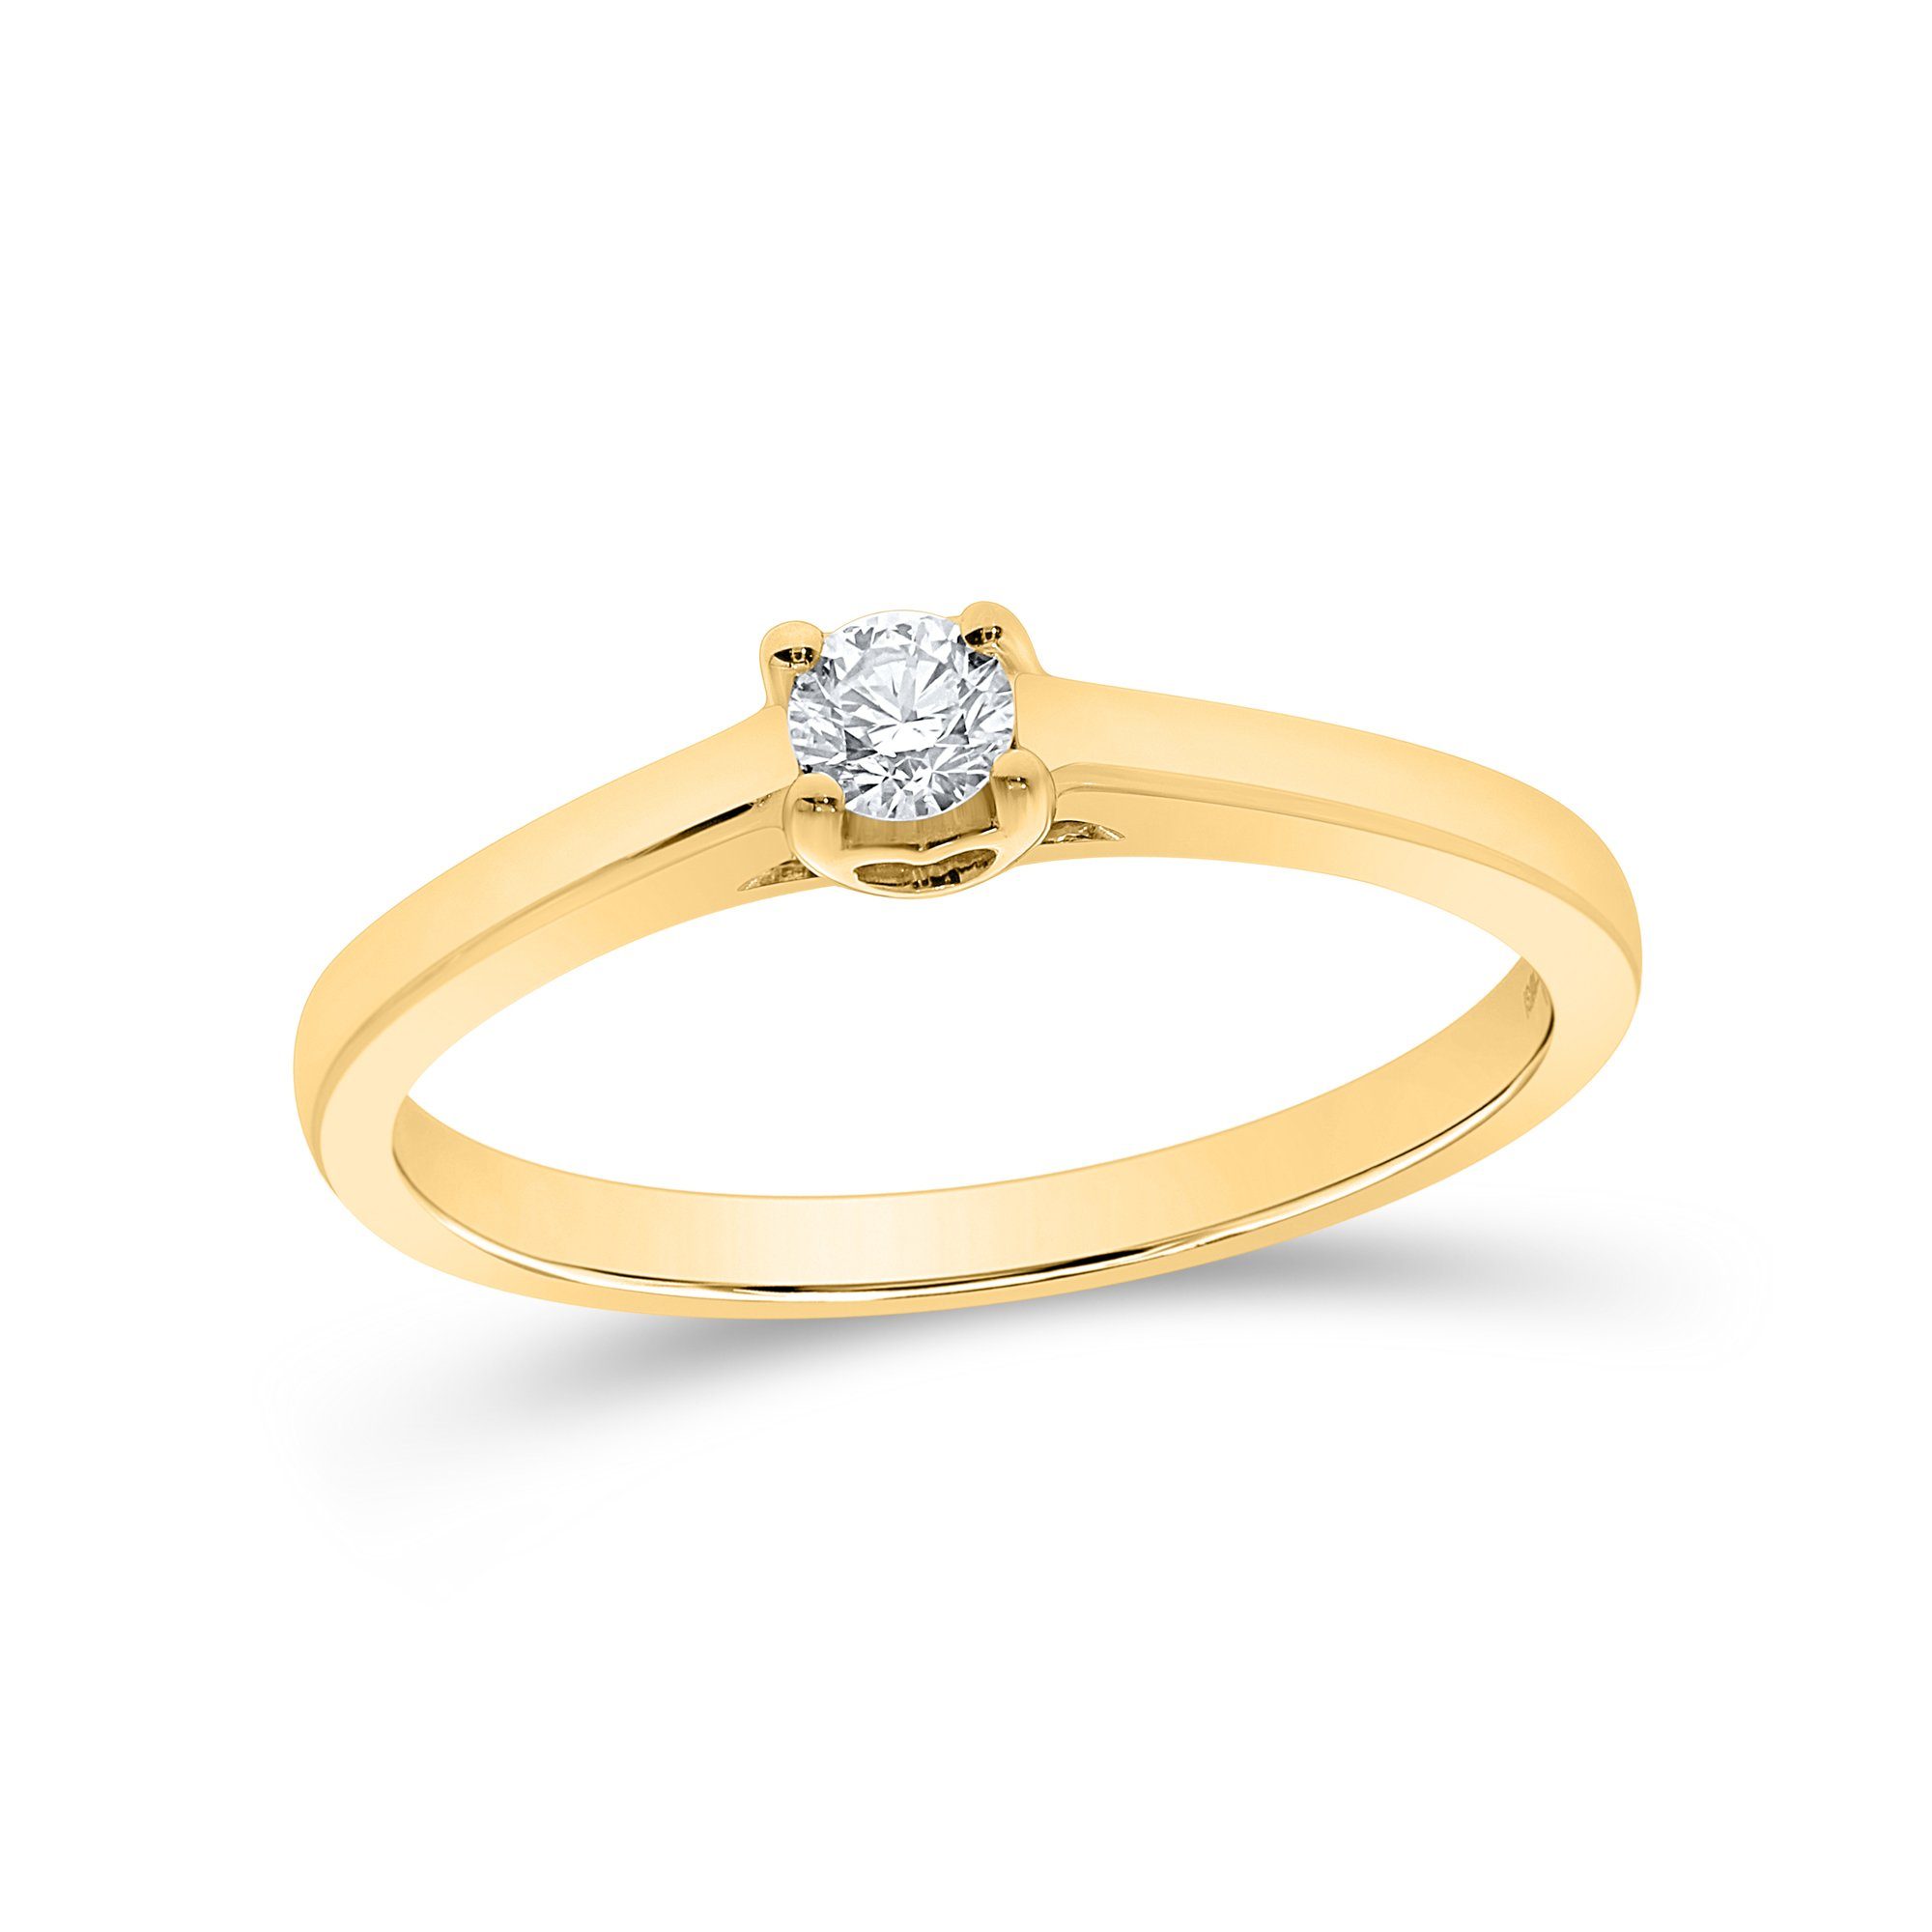 Stella-Jewellery Solitärring Verlobungsring 585er Gelbgold 0,15ct. Diamant SZ54 (inkl. Etui), mit Brillant 0,05ct. - Poliert